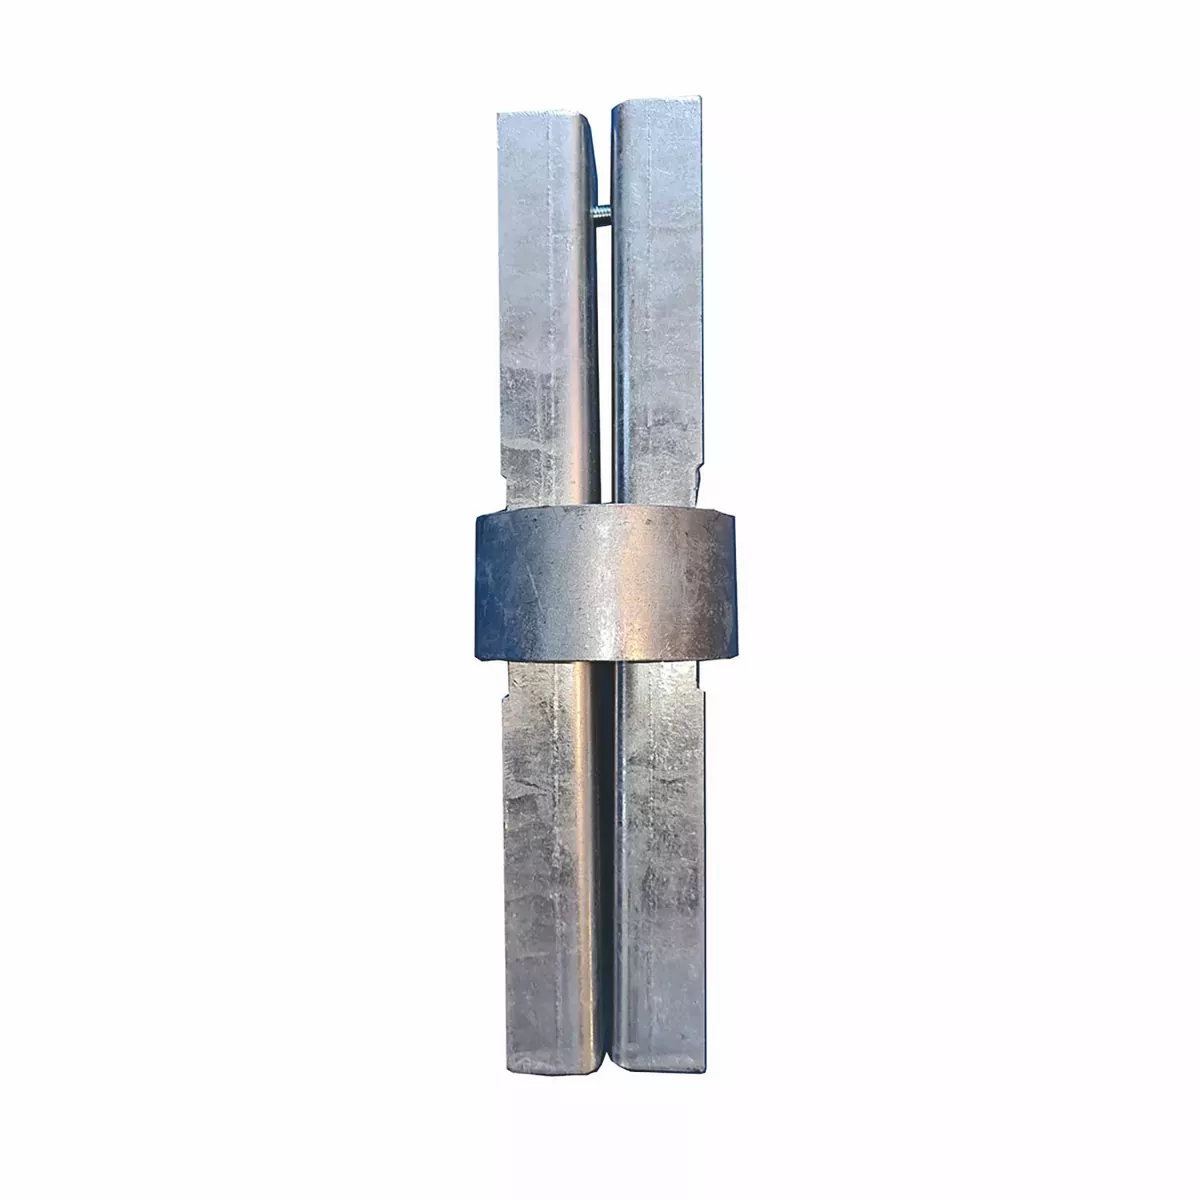 Rohrclip - Rohrverbinder mit Stahlmittelring, für Pfosten ø 76 mm, L 260 mm